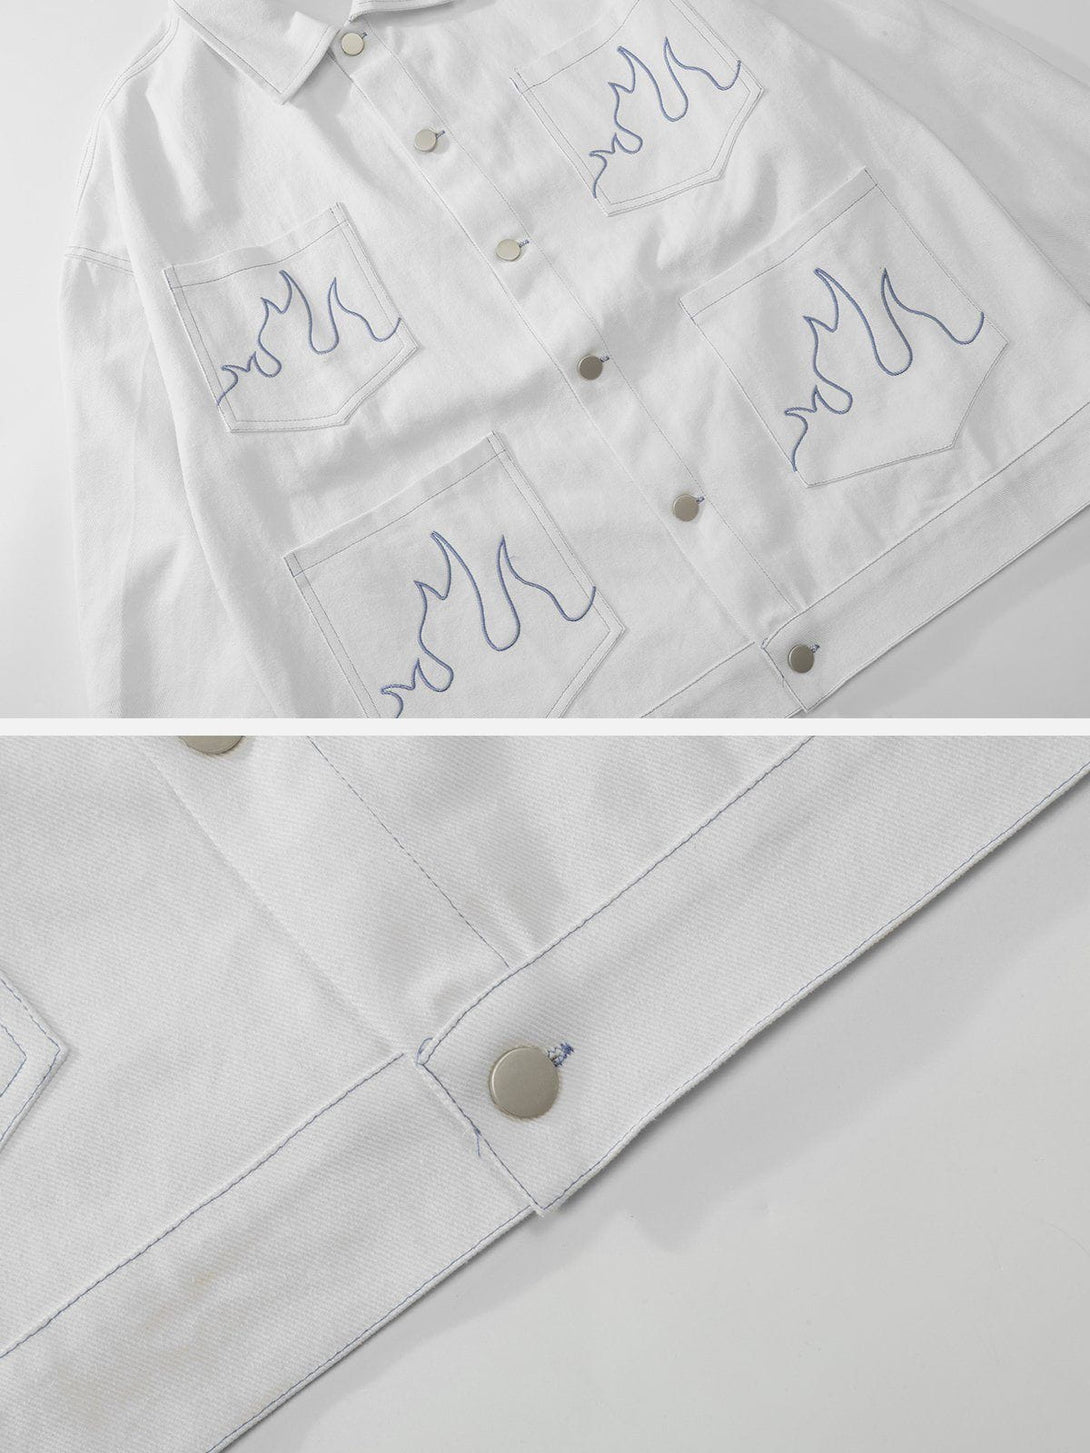 AlanBalen® - Multi-pocket Embroidered Jacket AlanBalen